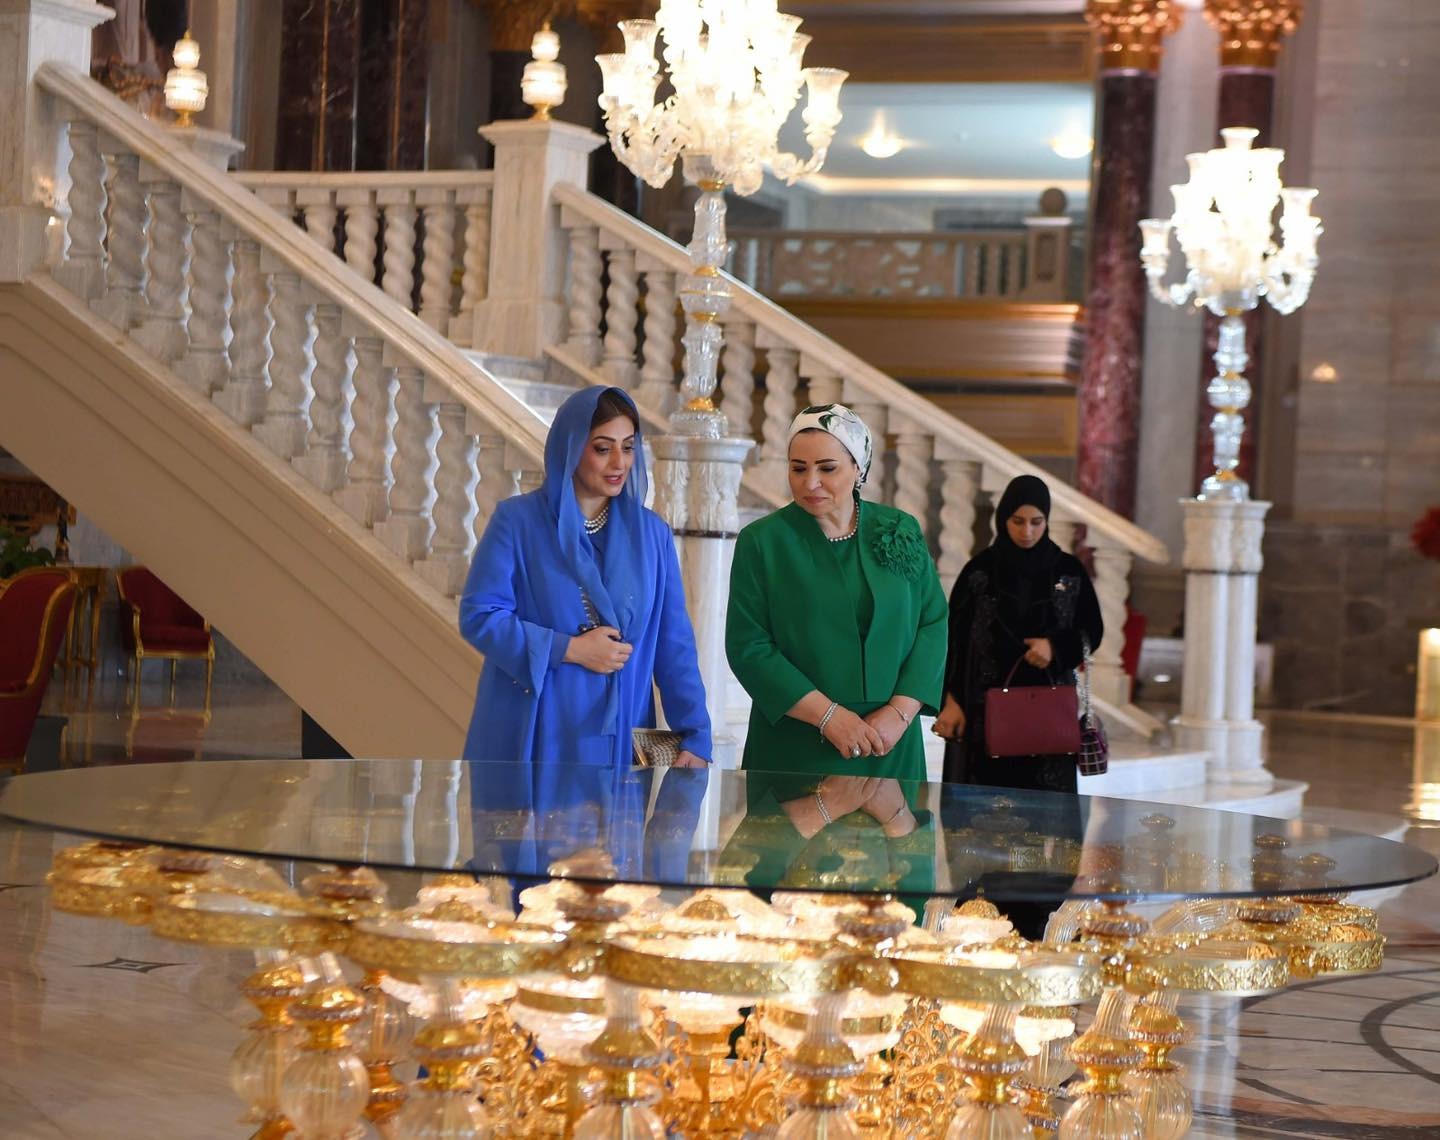  السيدة انتصار السيسي و حرم سلطان عمان خلال زيارتهم العاصمة الادارية